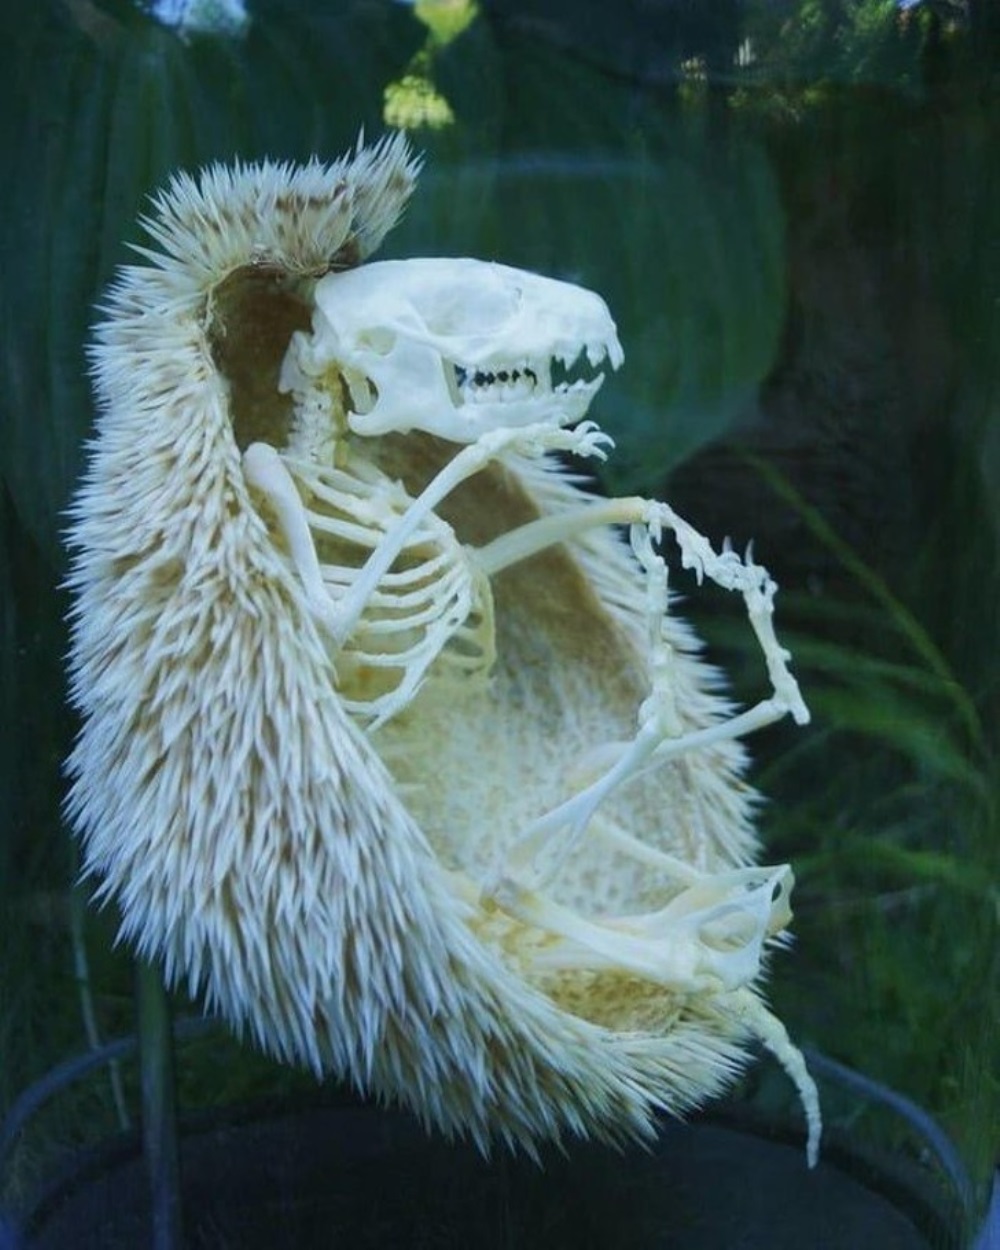 Αυτός είναι ο σκελετός ενός σκαντζόχοιρου